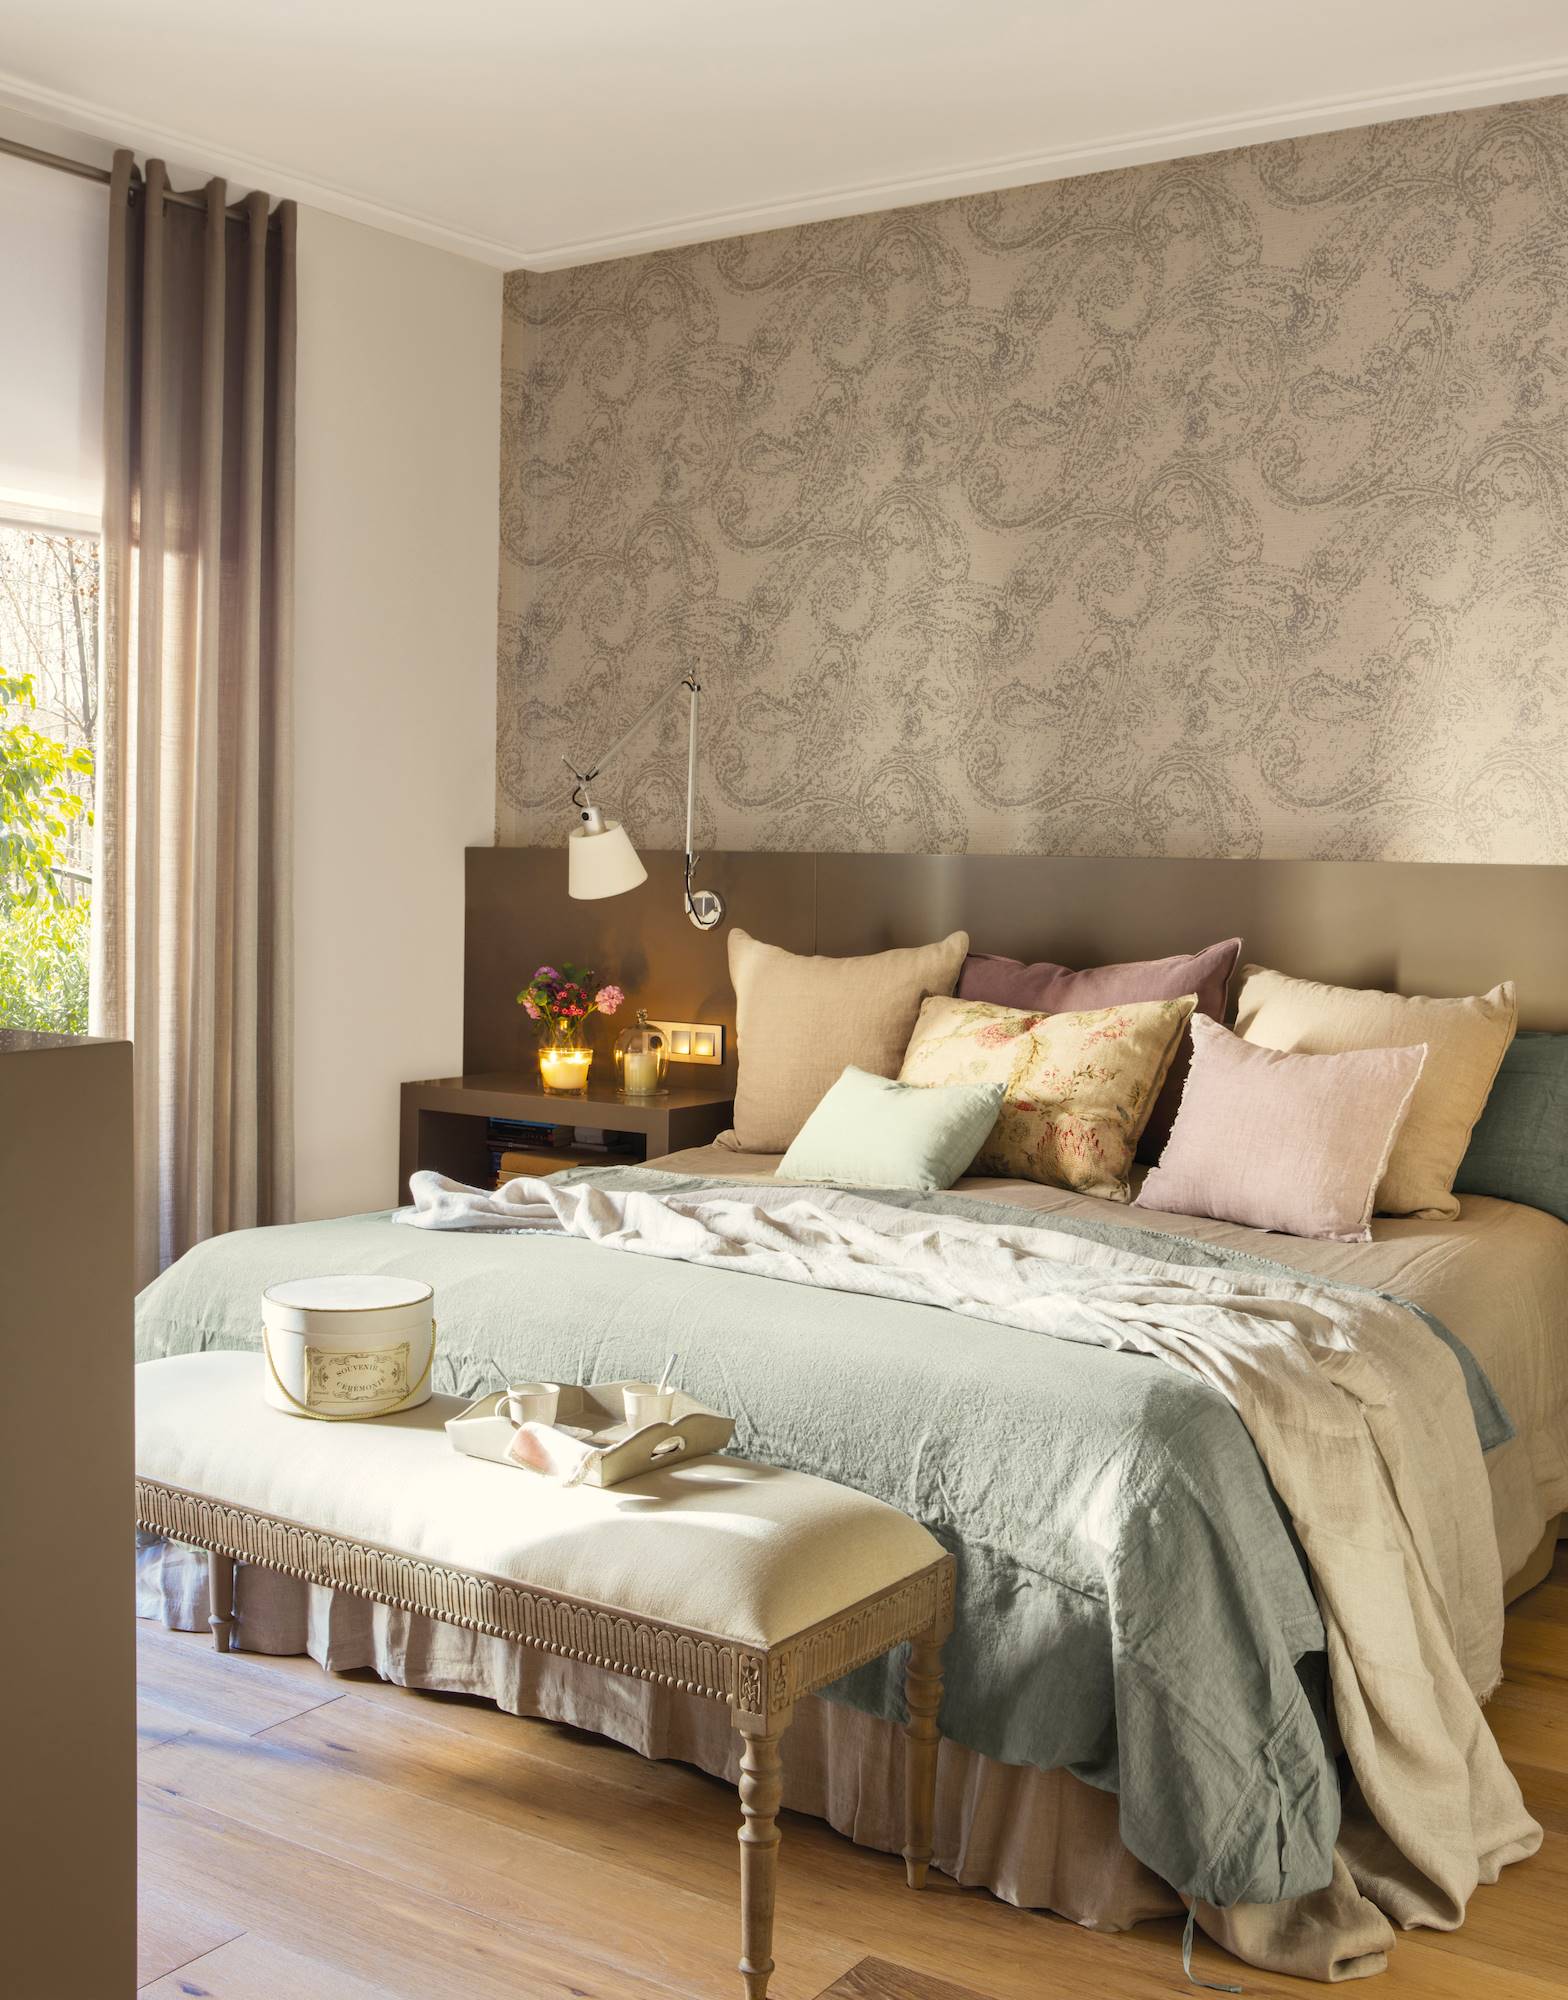 Dormitorio con papel pintado marrón en la pared del cabecero.